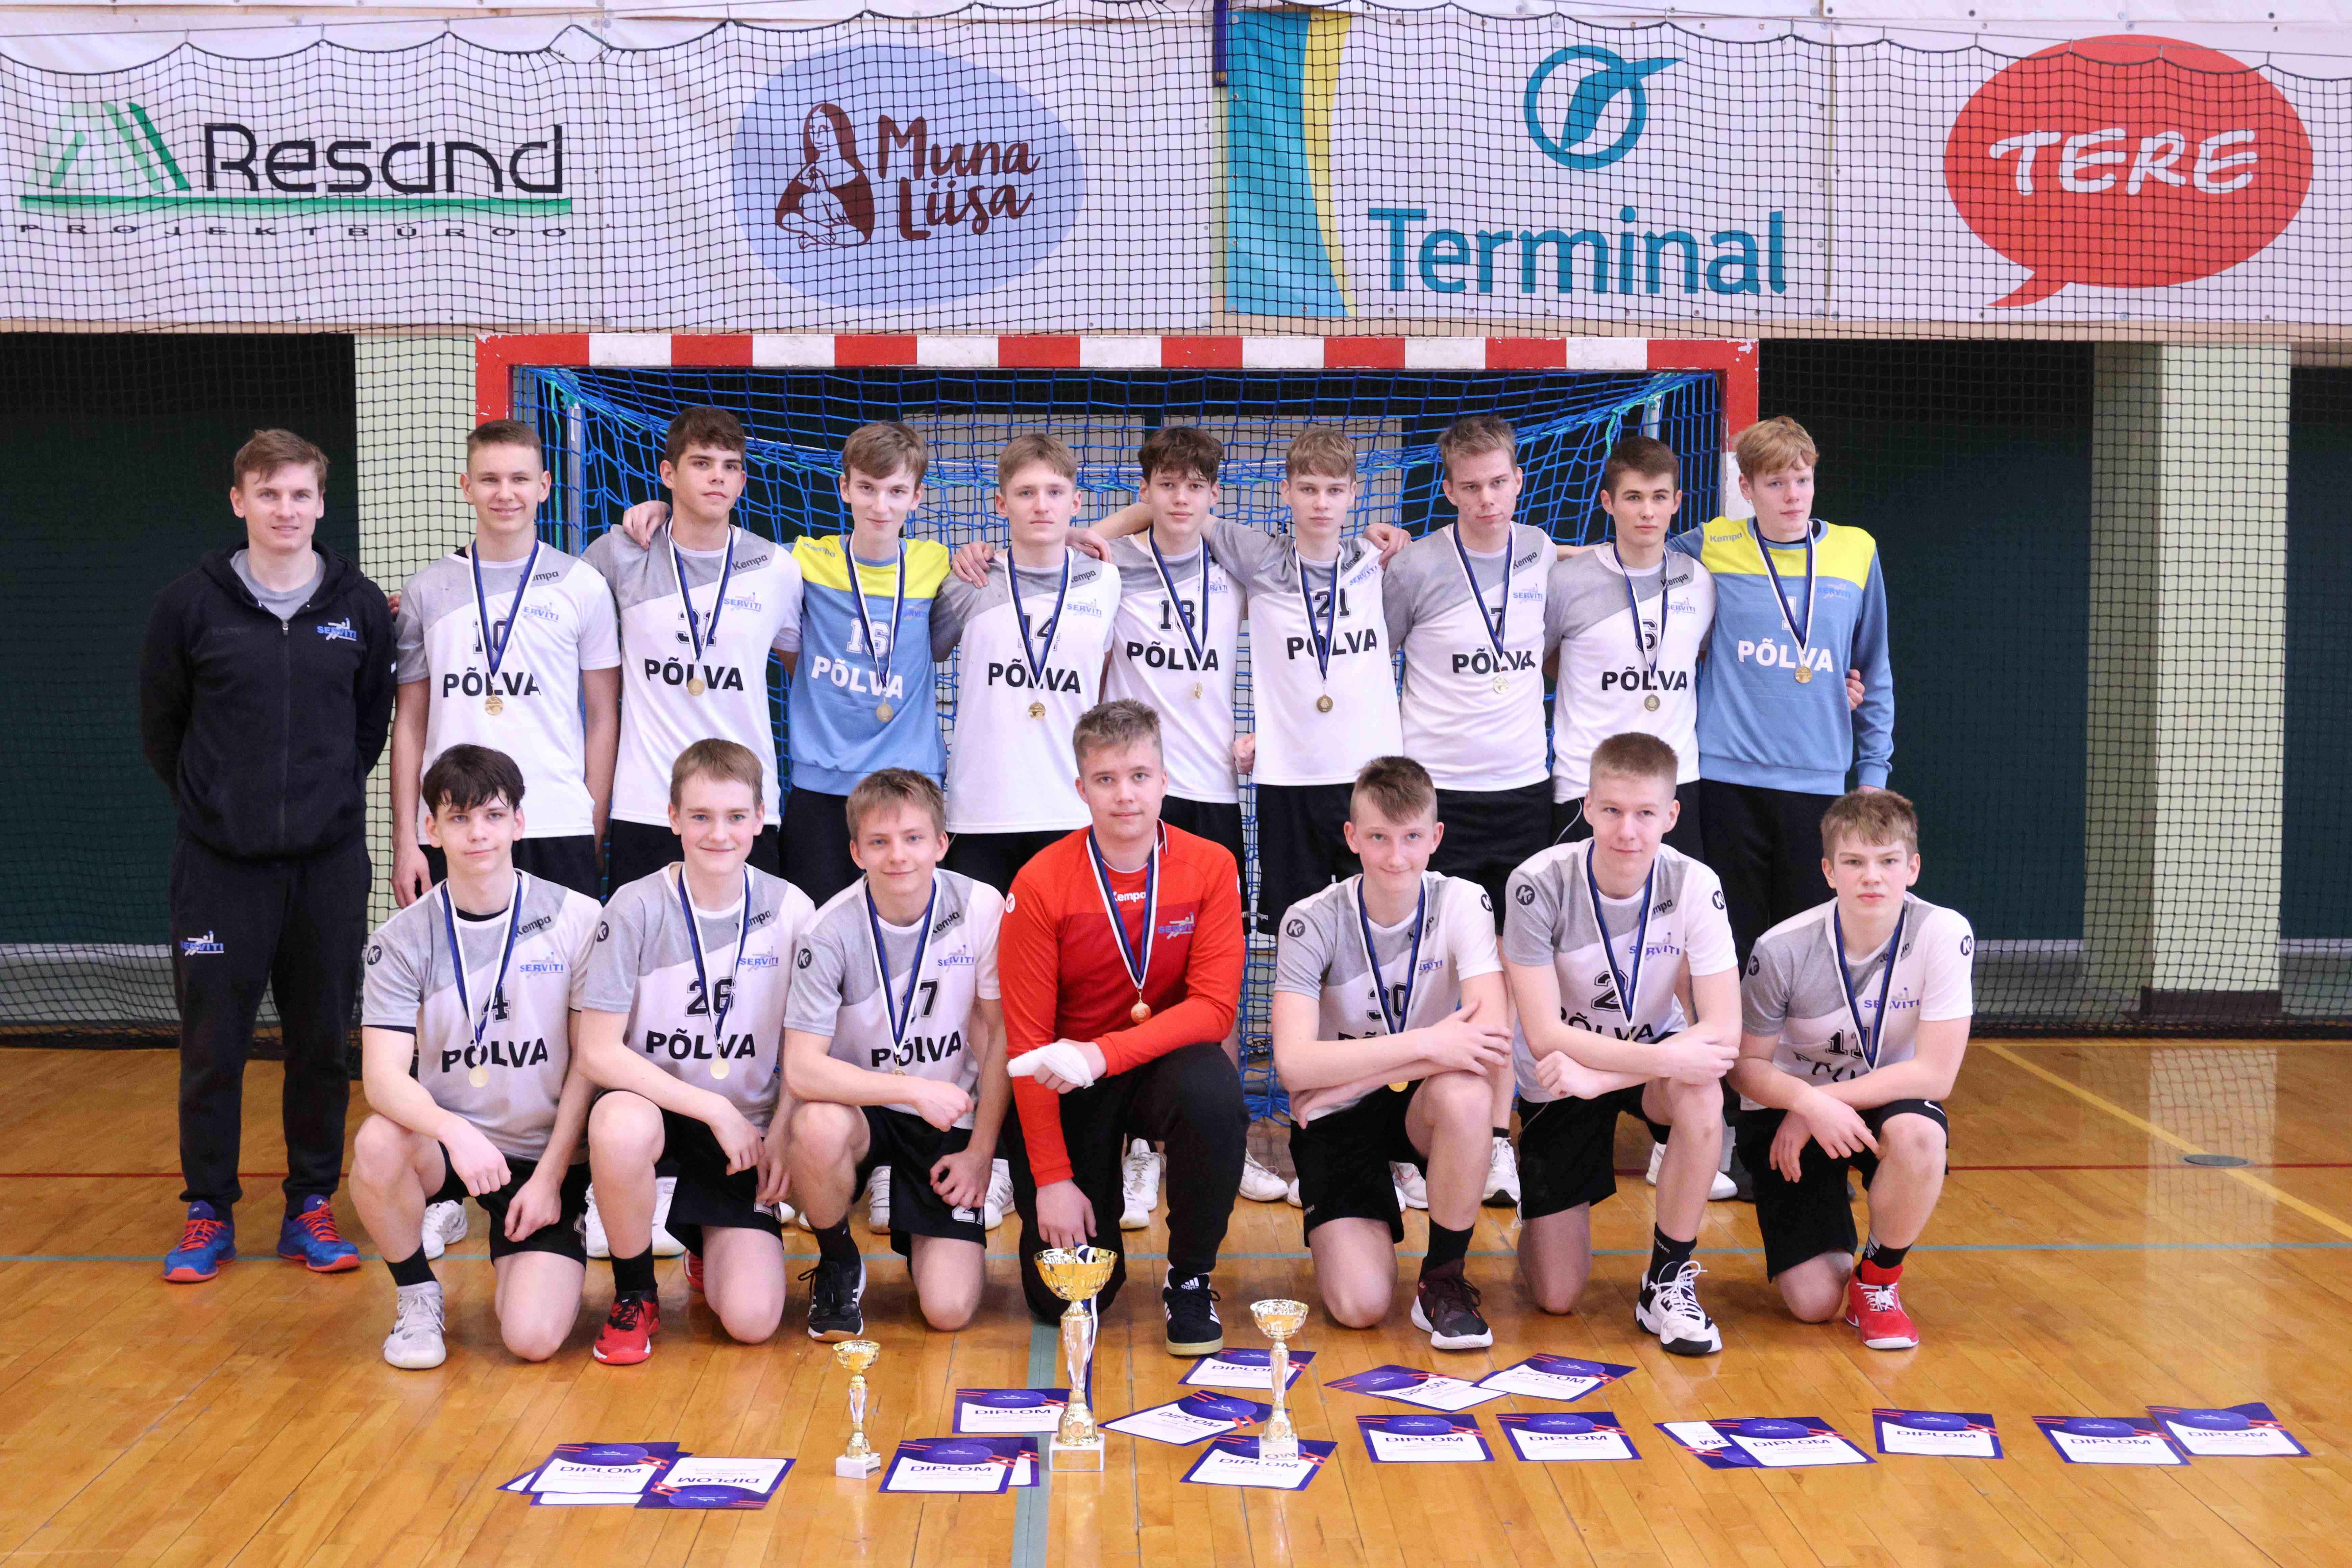 Põlva Käsipalliklubi/Põlva Spordikooli võistkond on 2024 Eesti meister noormeeste B2-vanuseklassi käsipallis